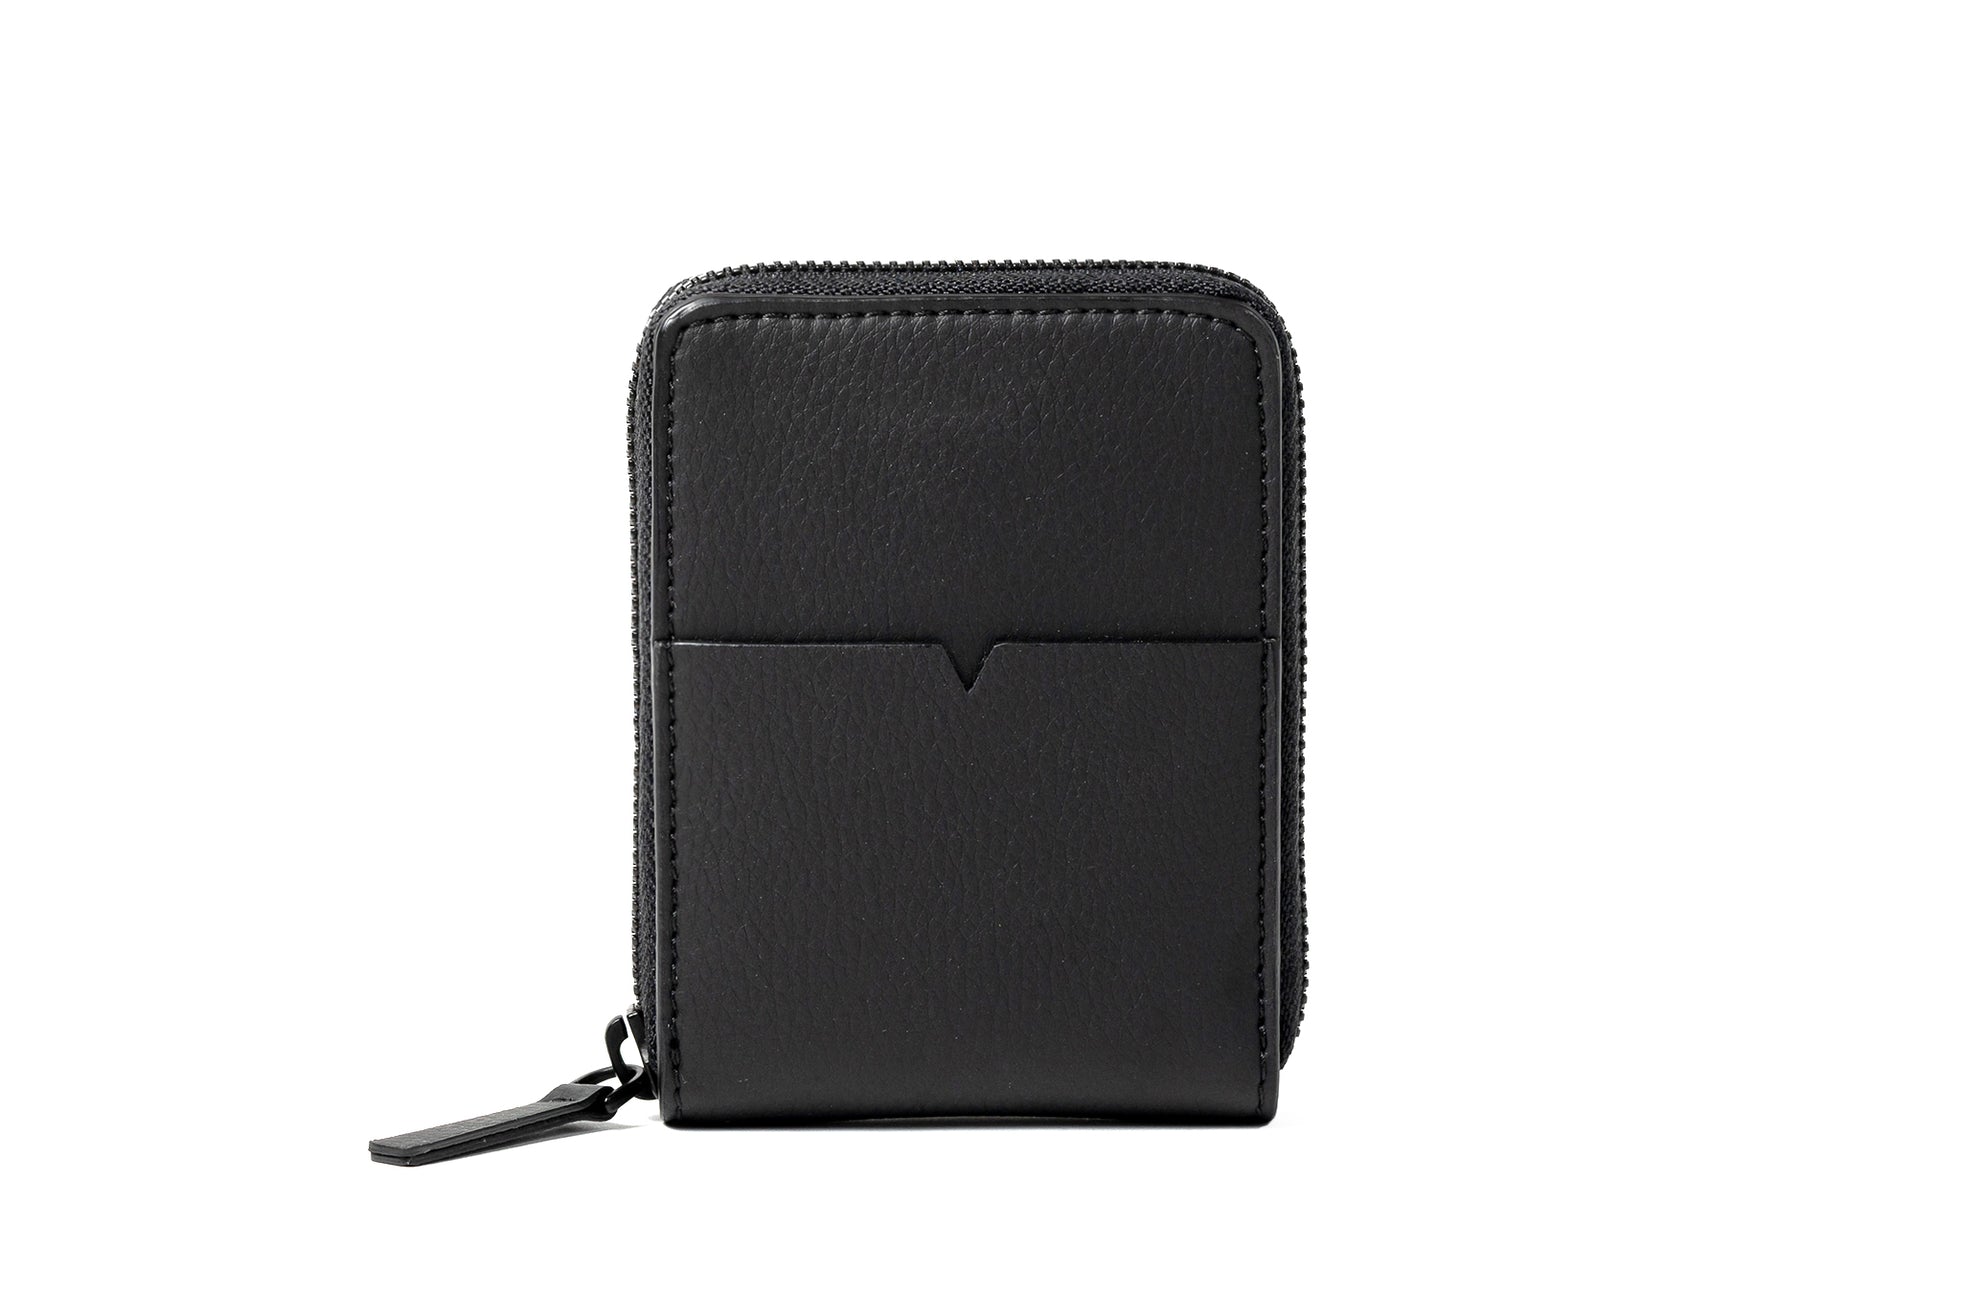 The Zip-Around Wallet in Technik in Black image 1